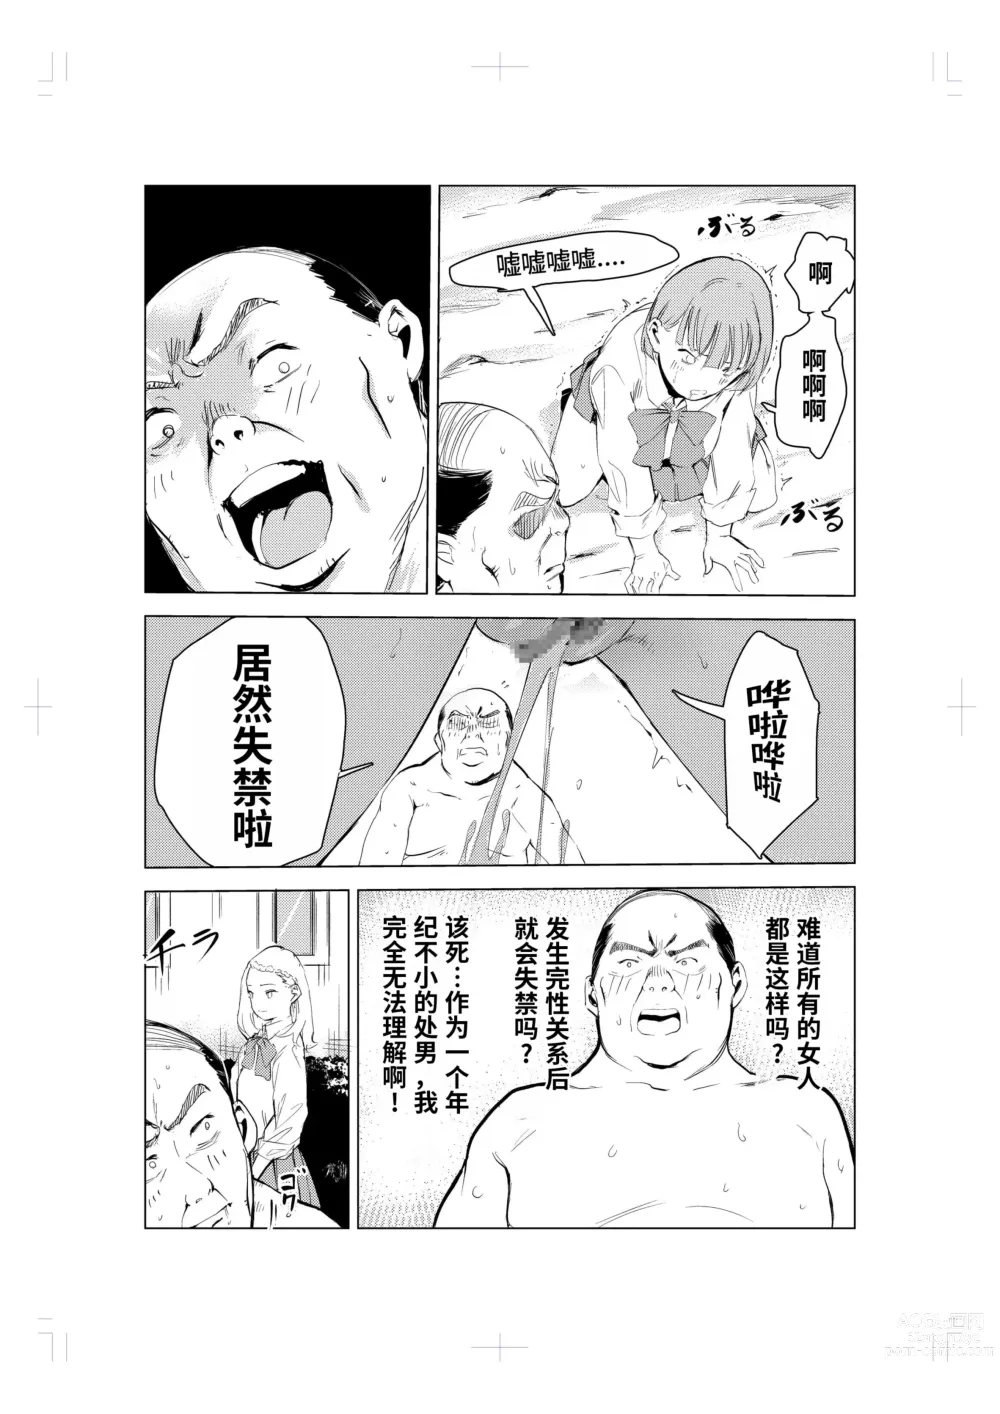 Page 51 of doujinshi 40-sai no Mahoutukai